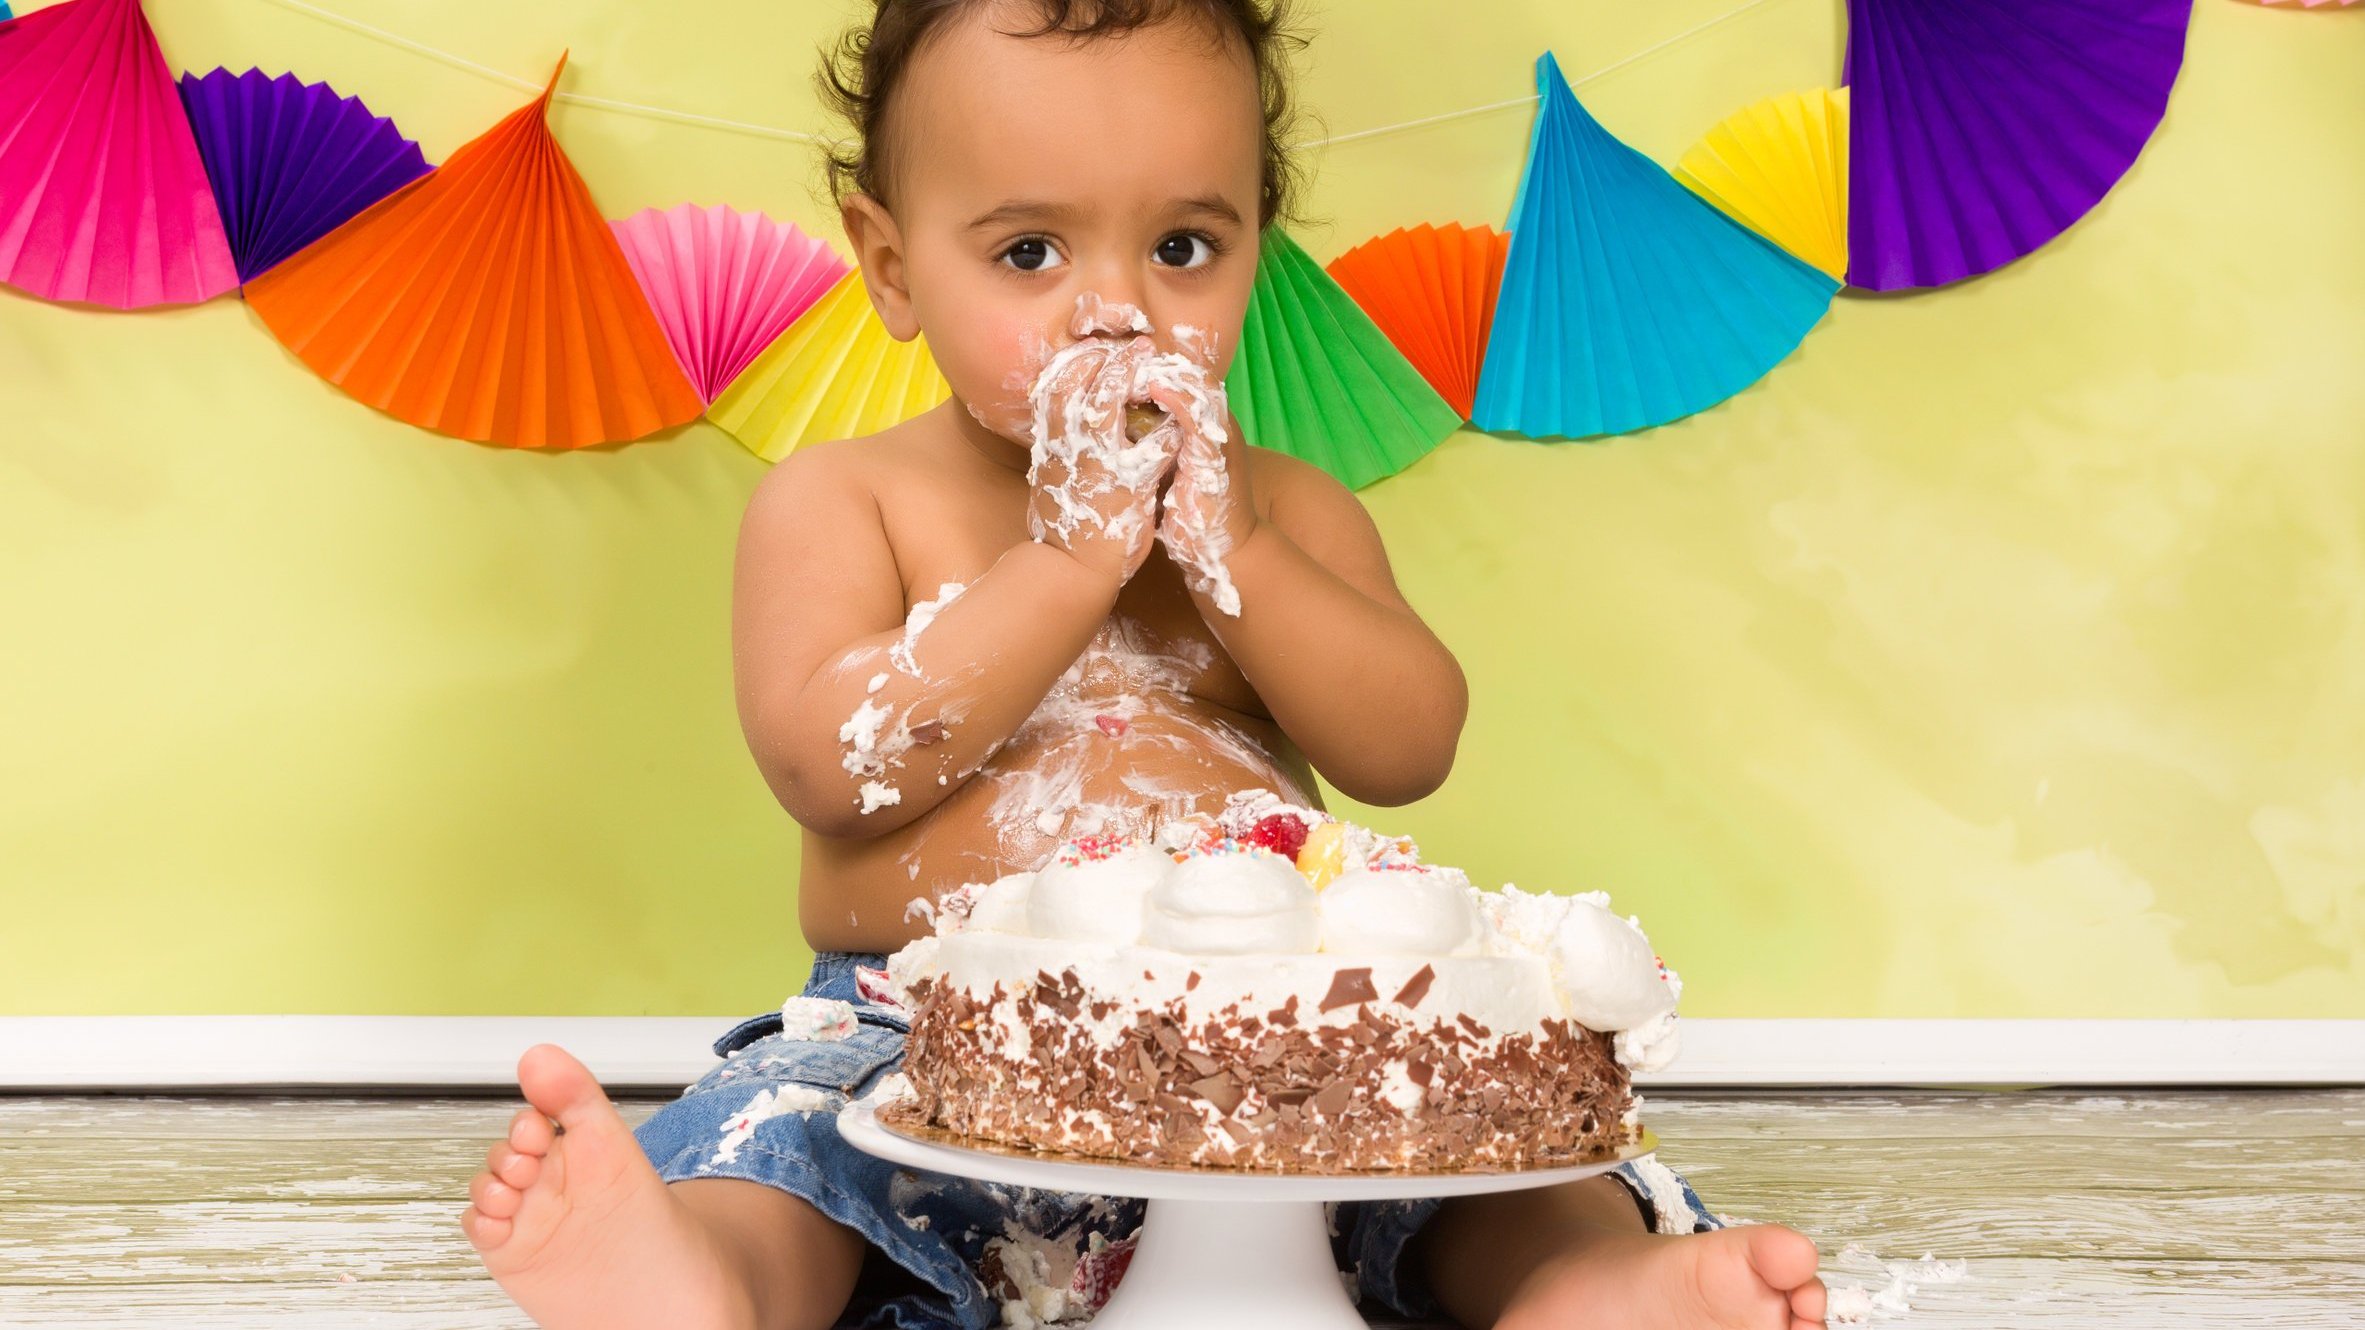 Bebê se sujando com um bolo de aniversário